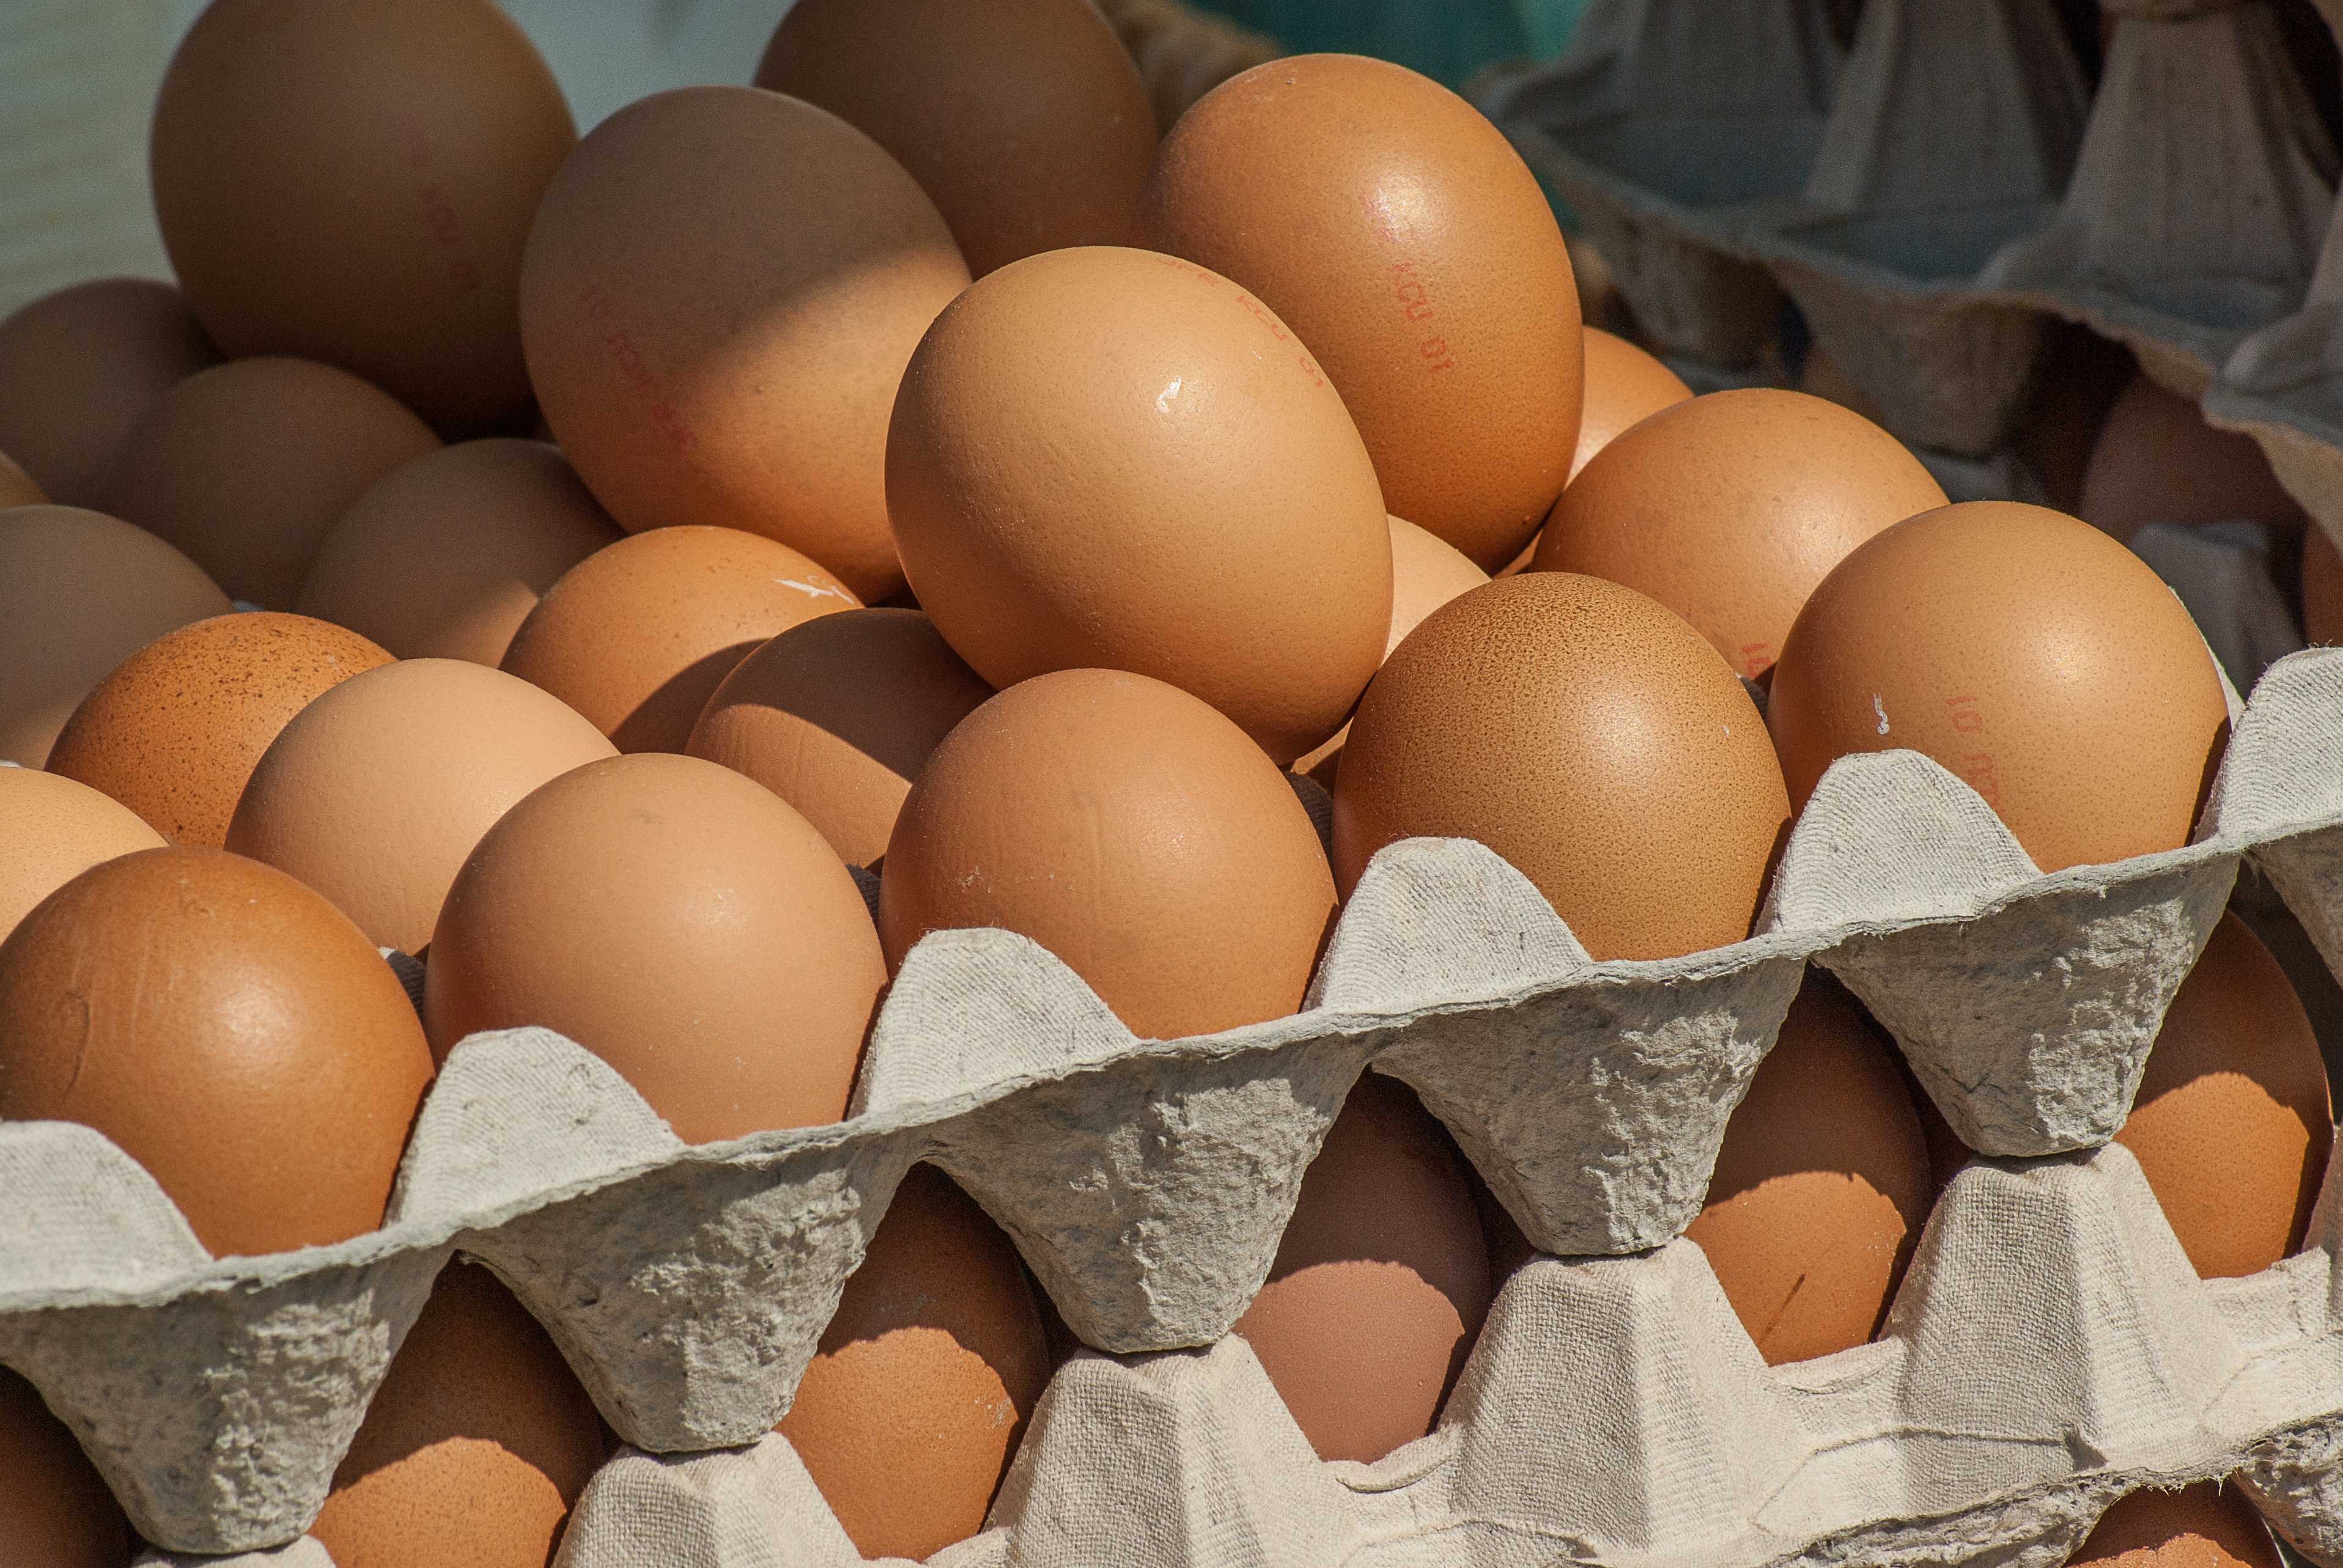 Как на самом деле изменились цены на яйца: цифры по-настоящему изумят